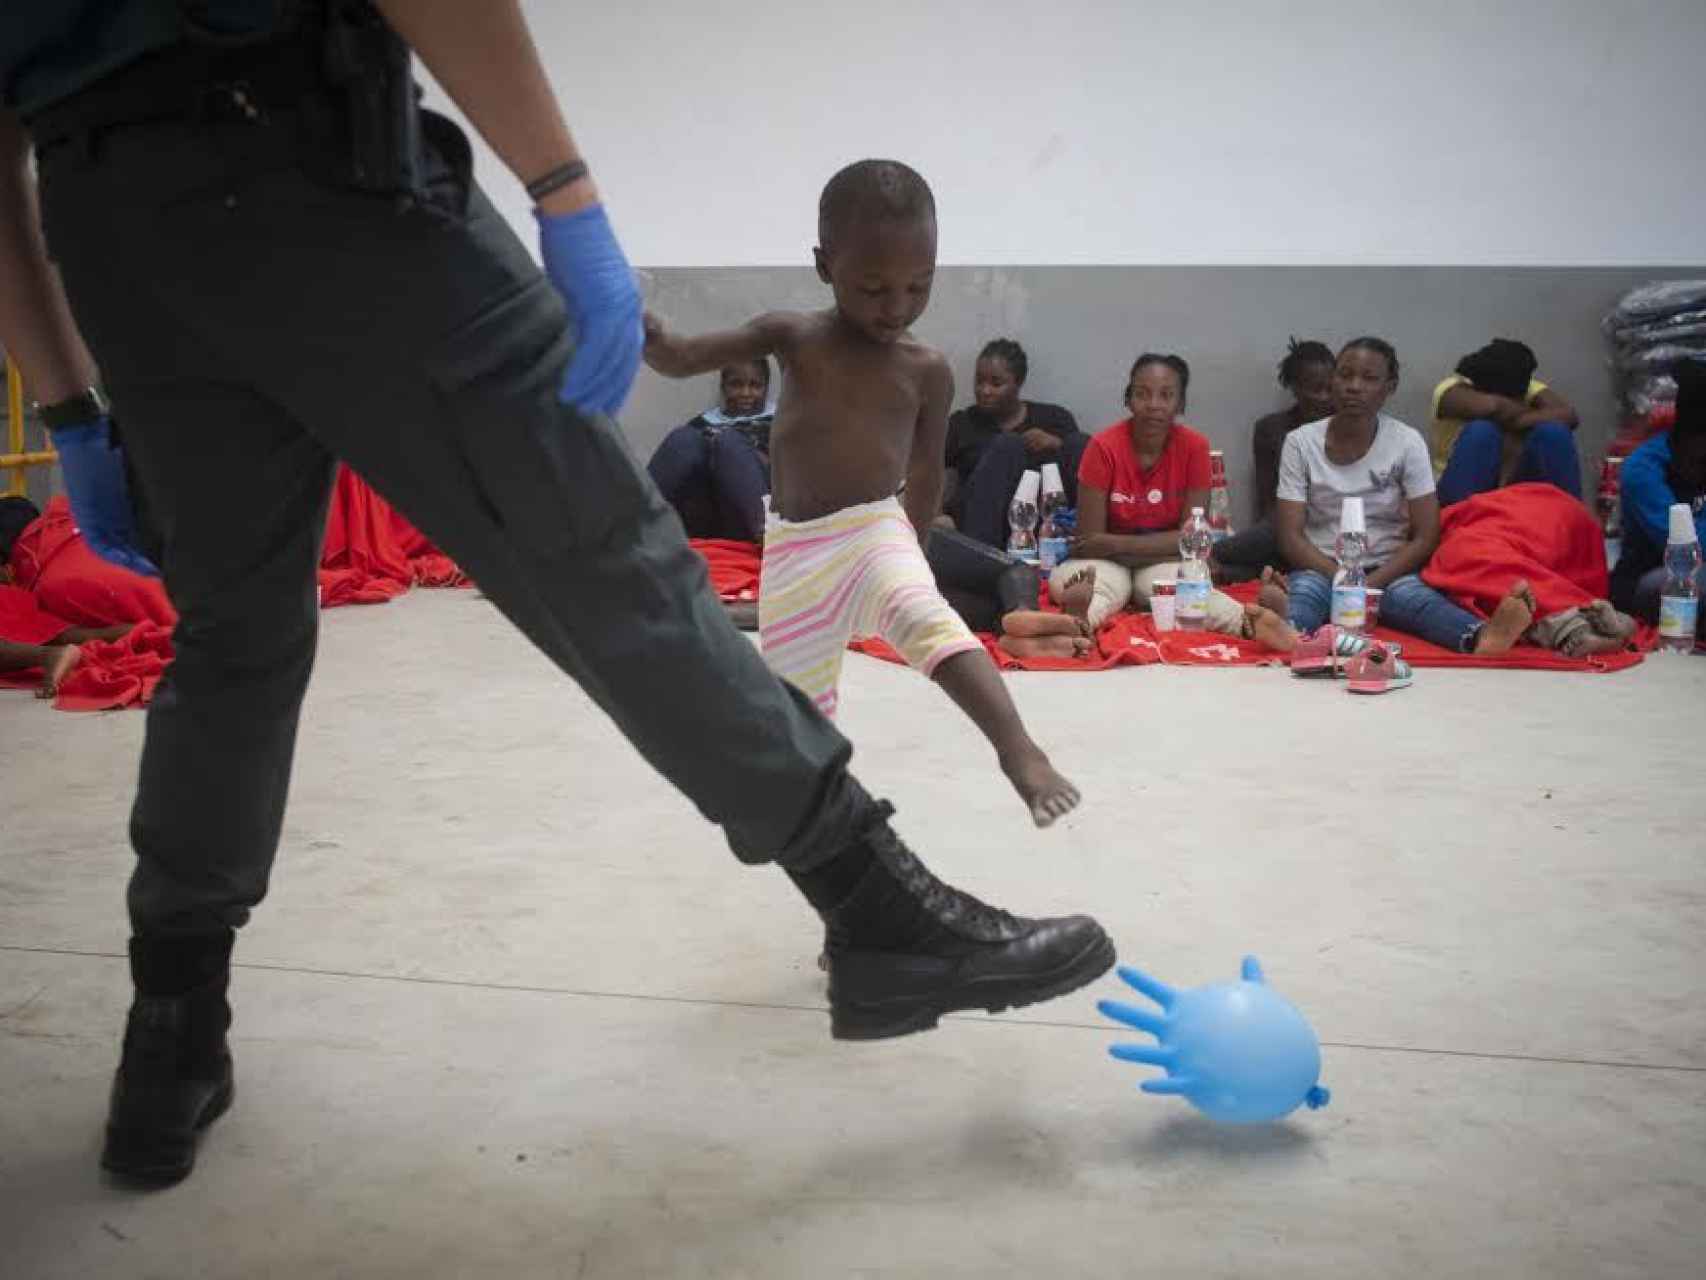 Un agente de la Guardia Civil juguetea con un niño de origen subsahariano con un globo hinchado en el puerto de Barbate (Cádiz). La imagen fue tomada durante la última crisis migratoria sufrida por España este verano.